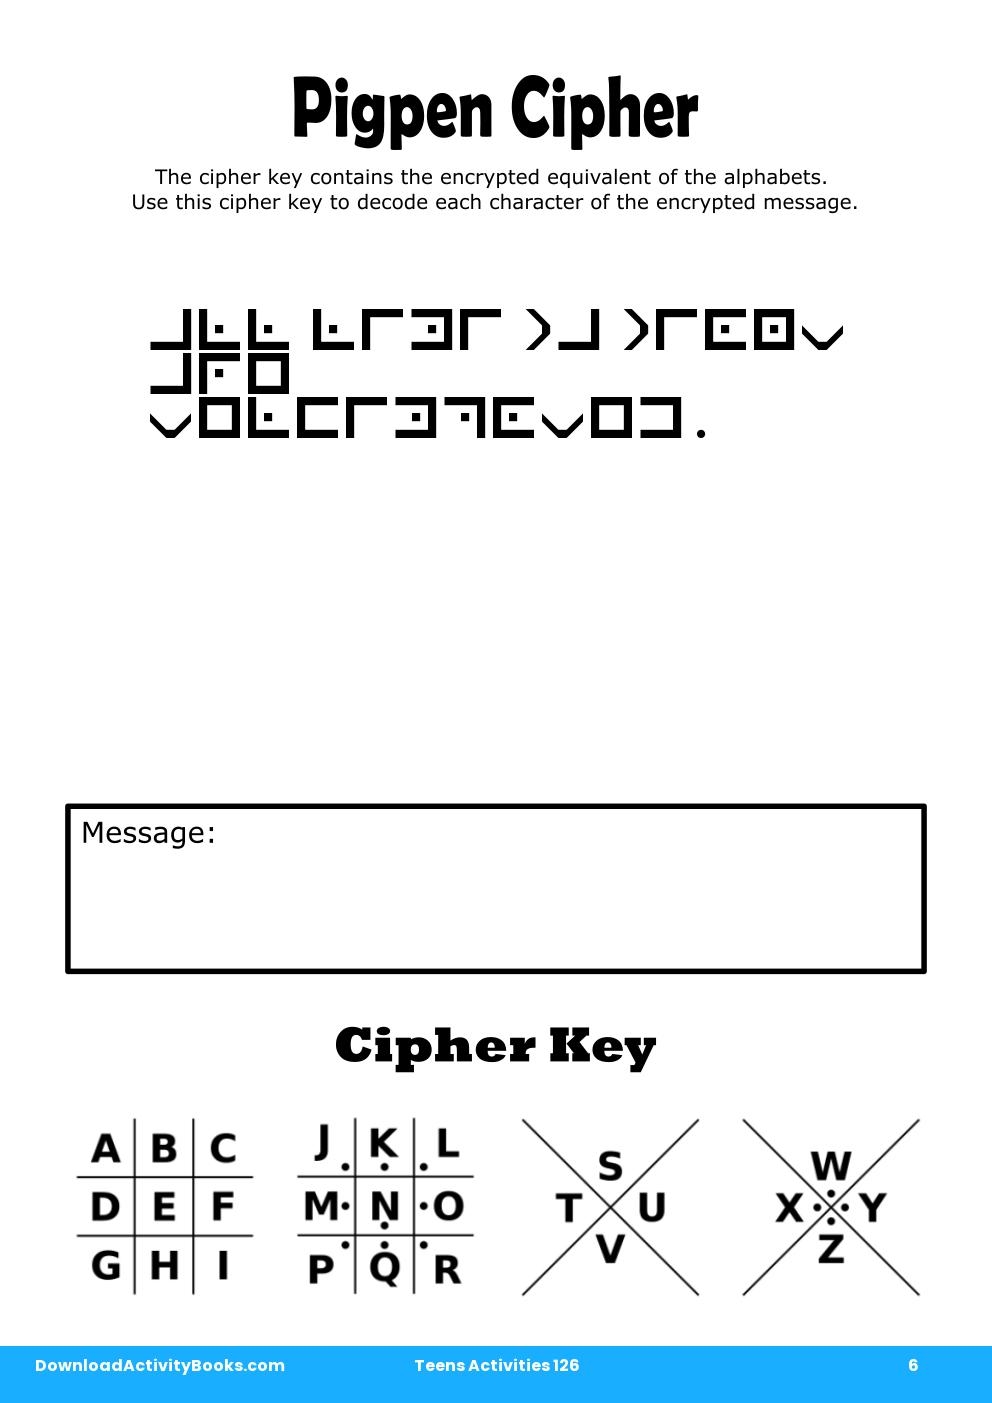 Pigpen Cipher in Teens Activities 126